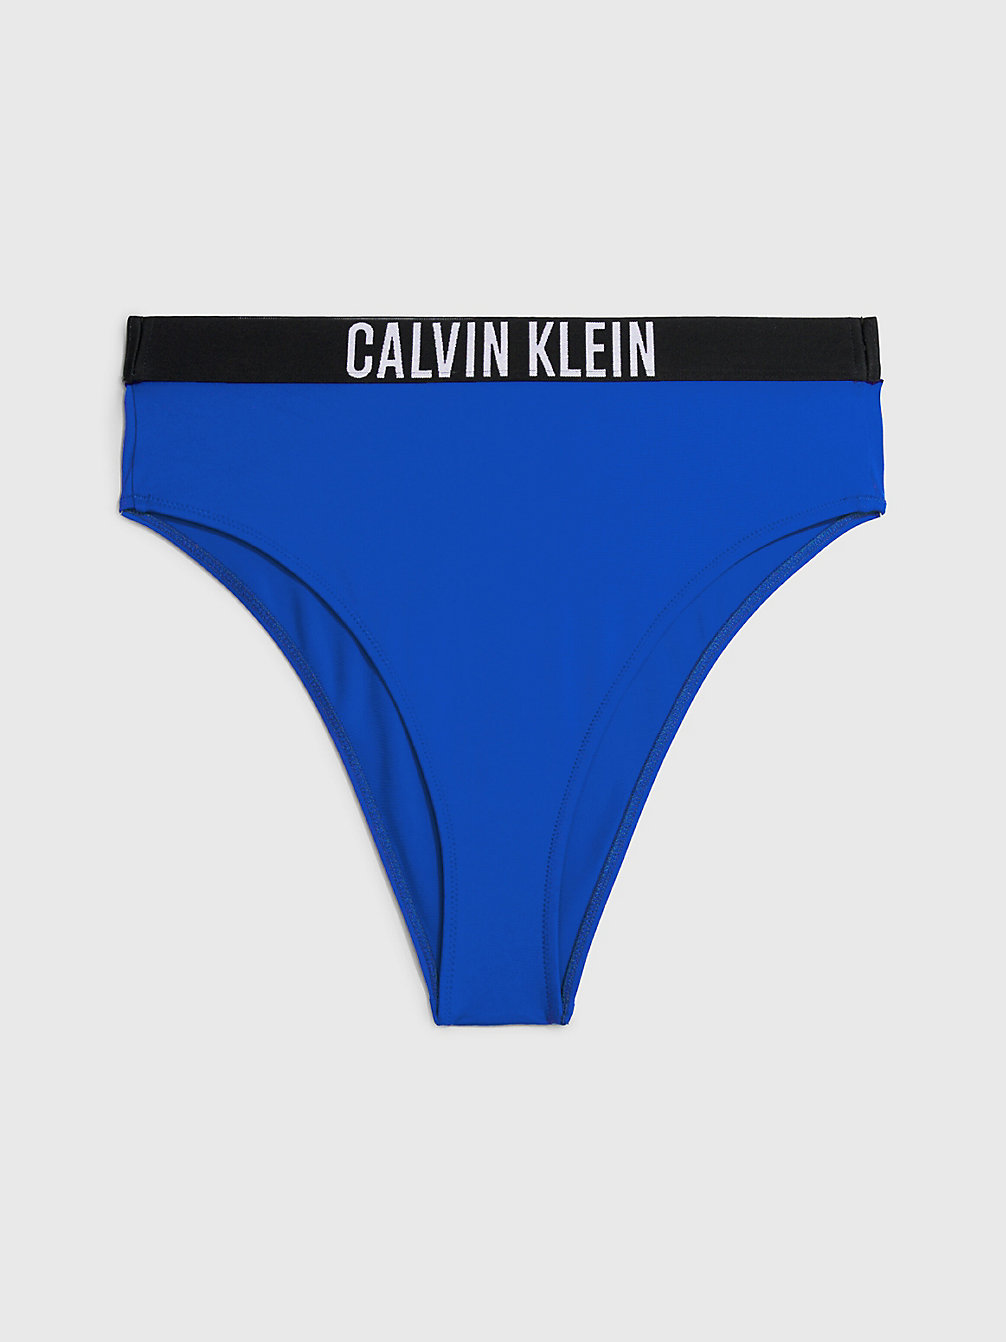 BISTRO BLUE > Bikinibroekje Met Hoge Taille - Intense Power > undefined dames - Calvin Klein